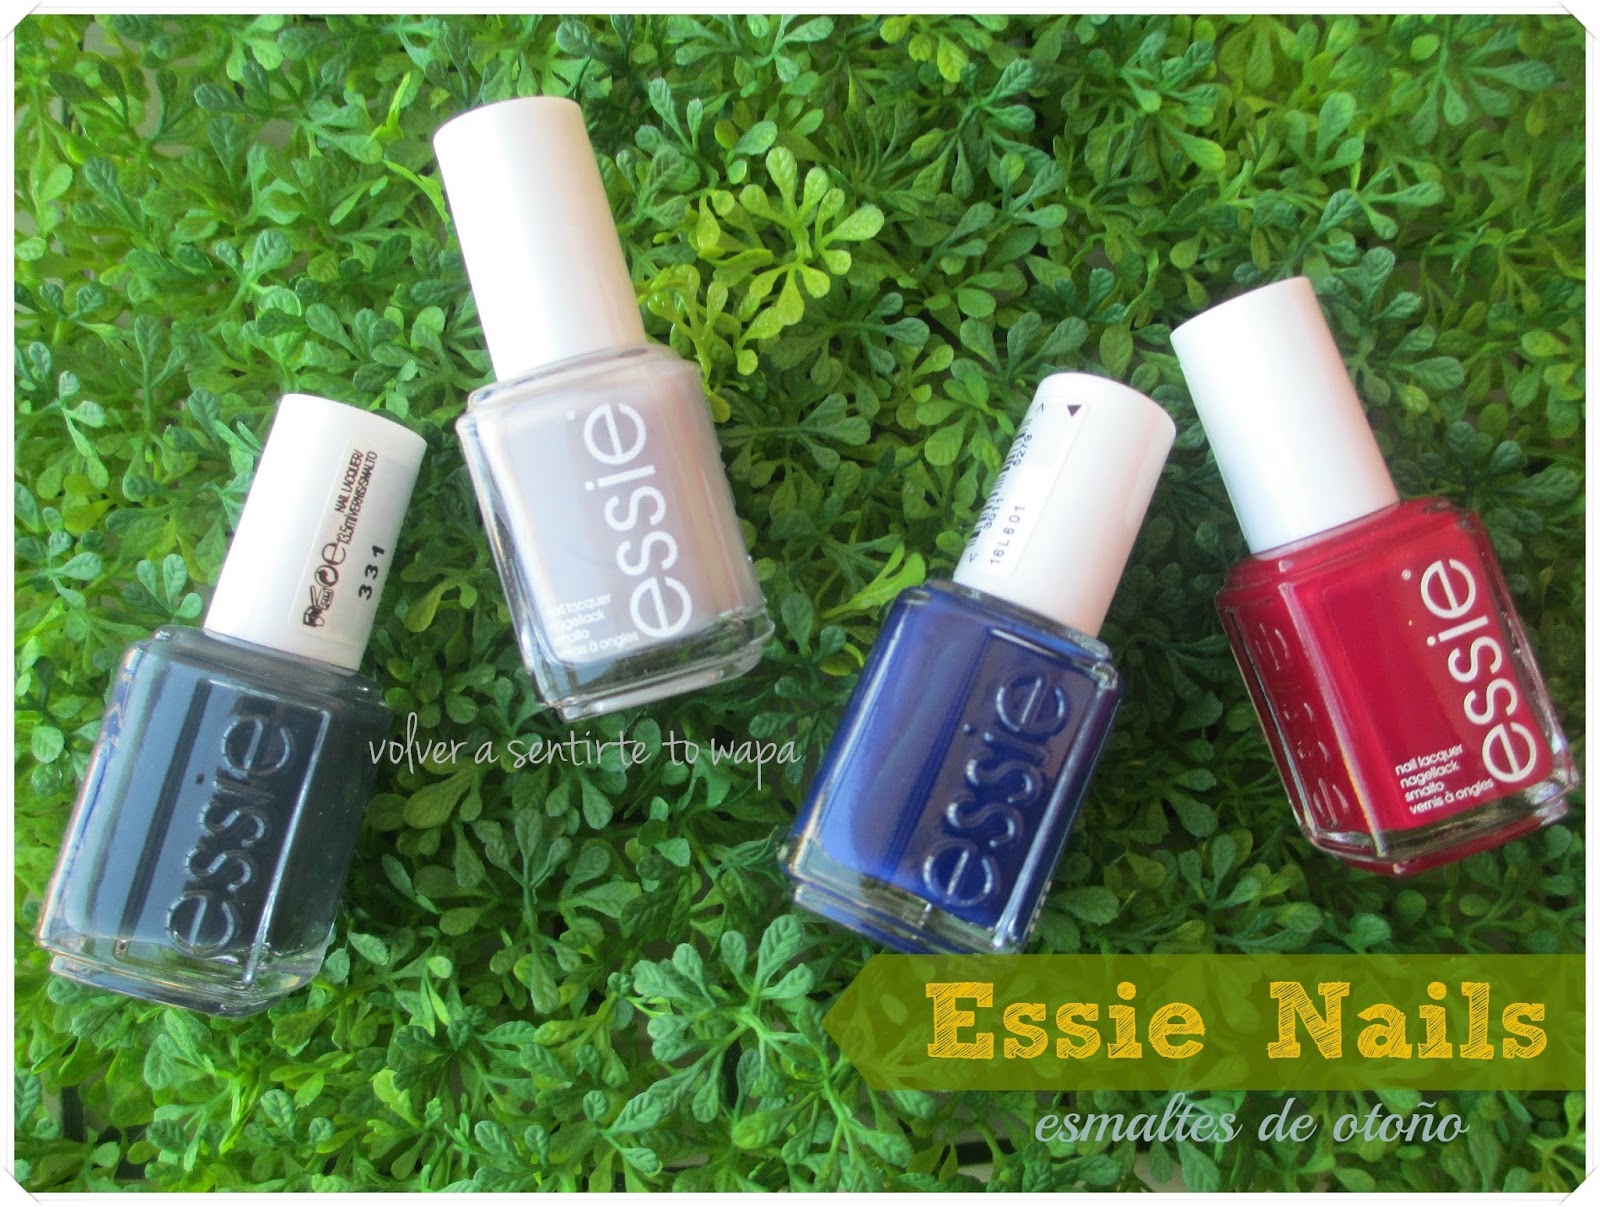 ESSIE Nails - otoño 2014